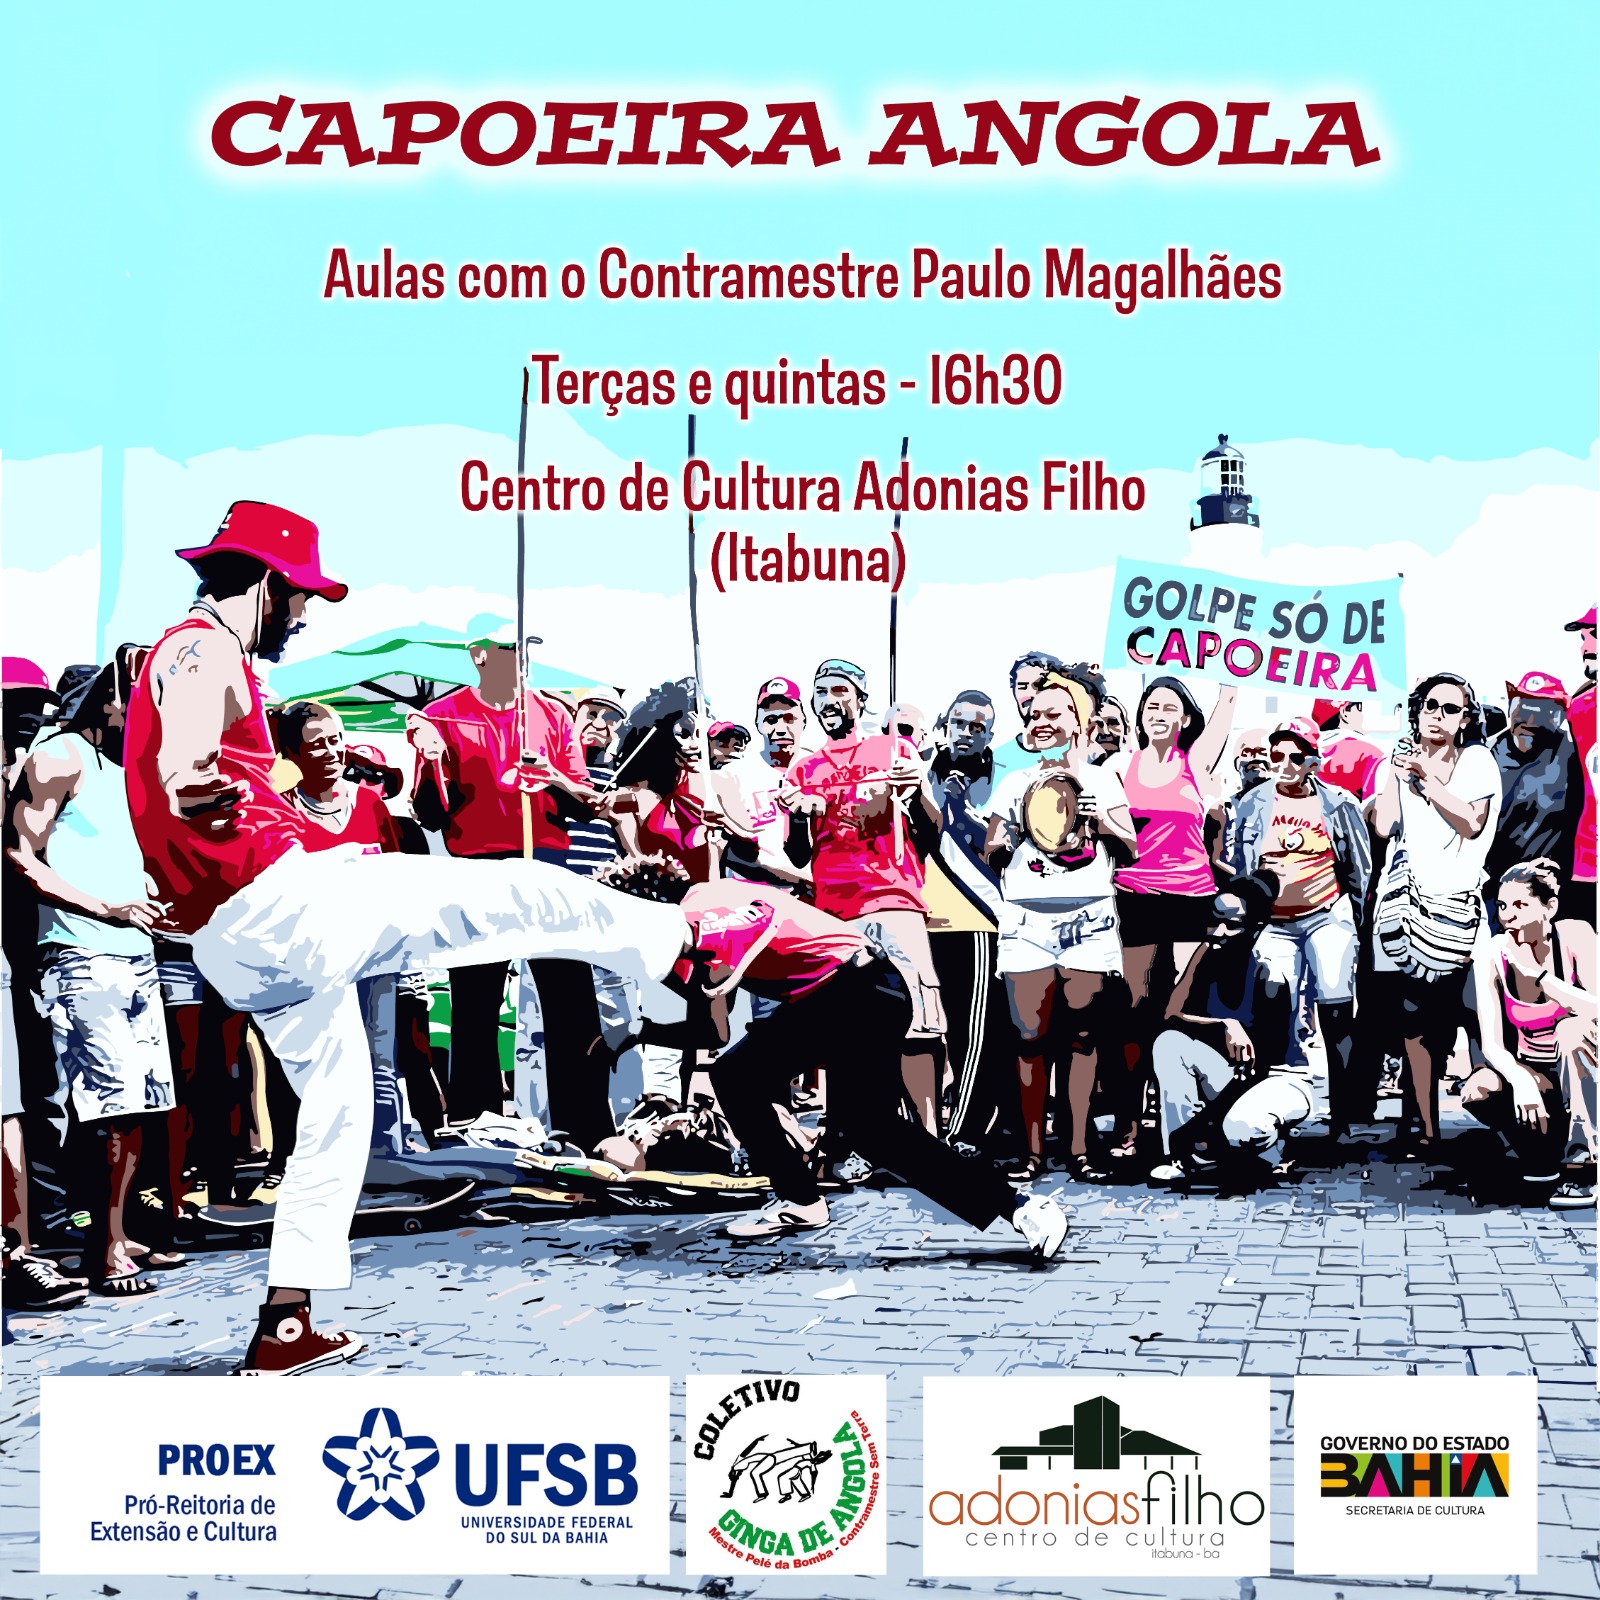 Ginga de Angola: Expressão corporal e musical da capoeira angola